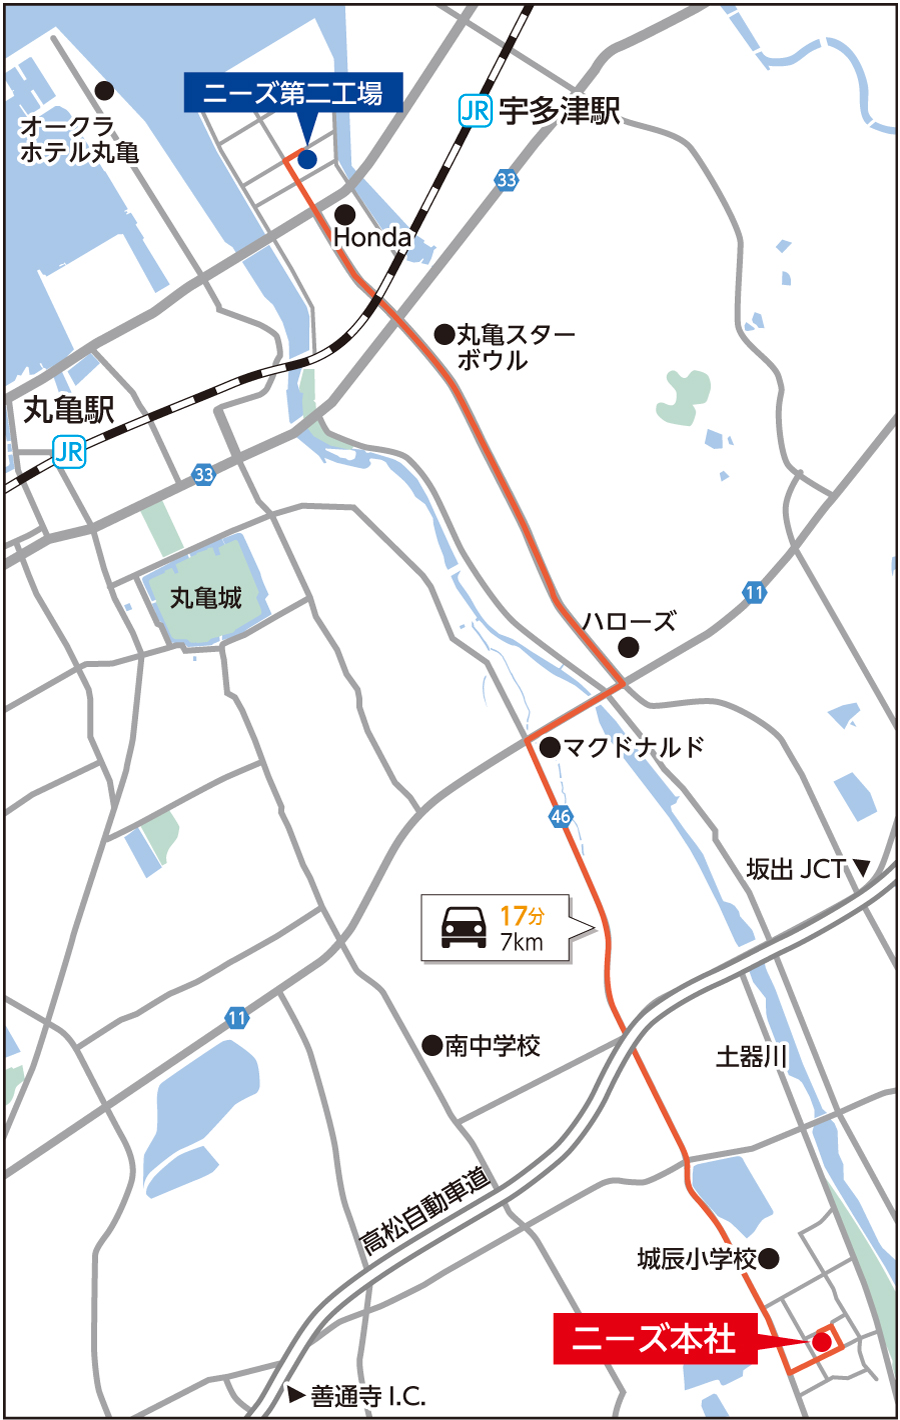 丸亀本社・土器第二工場地図